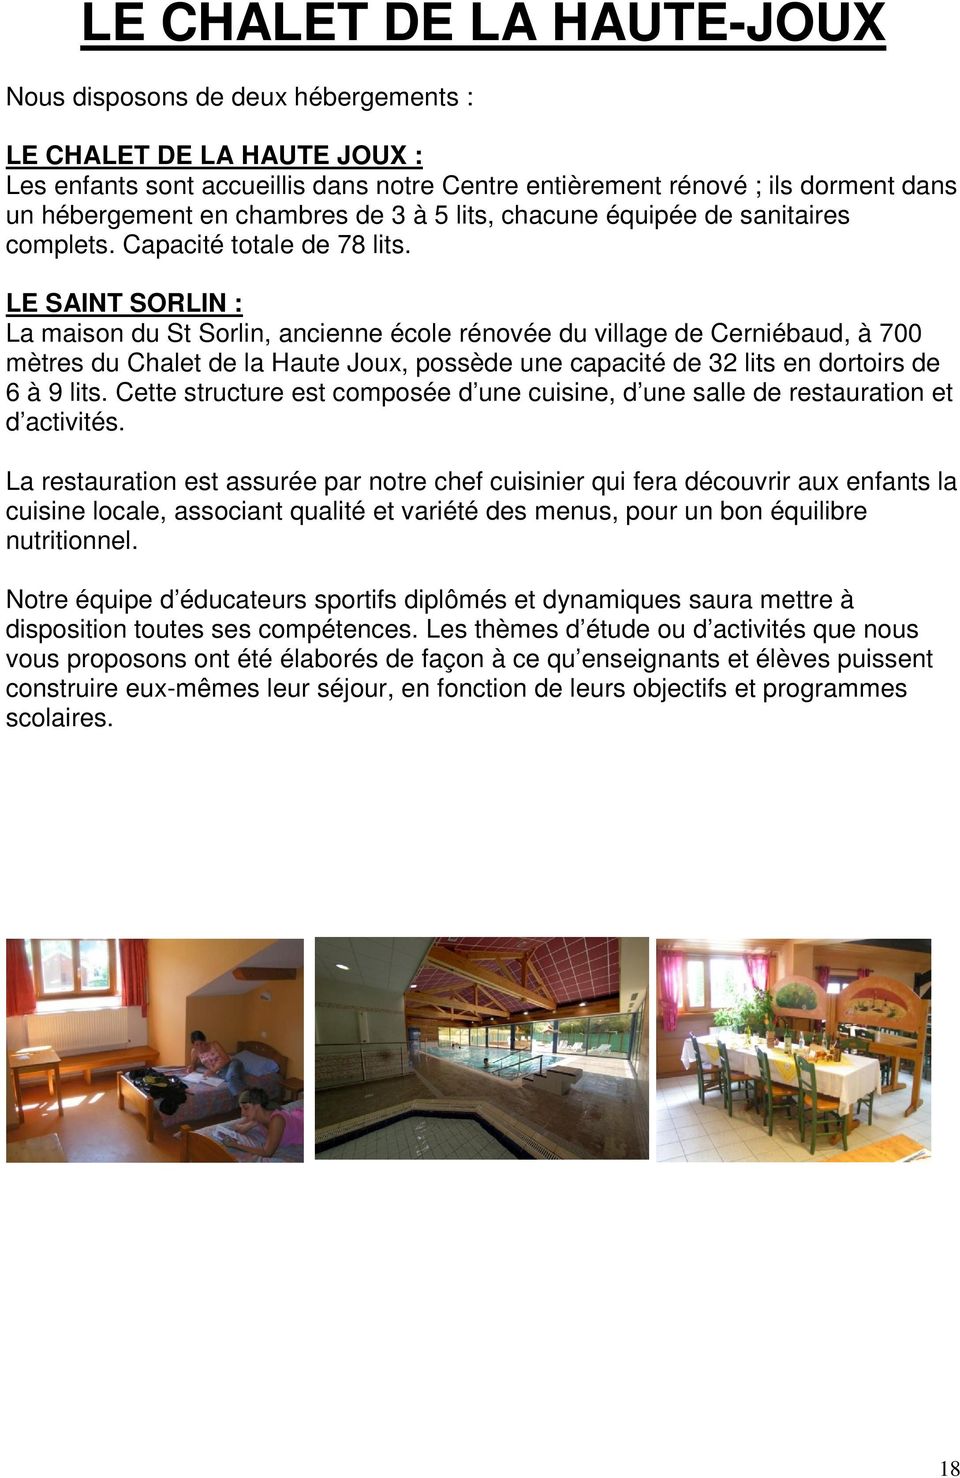 LE SAINT SORLIN : La maison du St Sorlin, ancienne école rénovée du village de Cerniébaud, à 700 mètres du Chalet de la Haute Joux, possède une capacité de 32 lits en dortoirs de 6 à 9 lits.